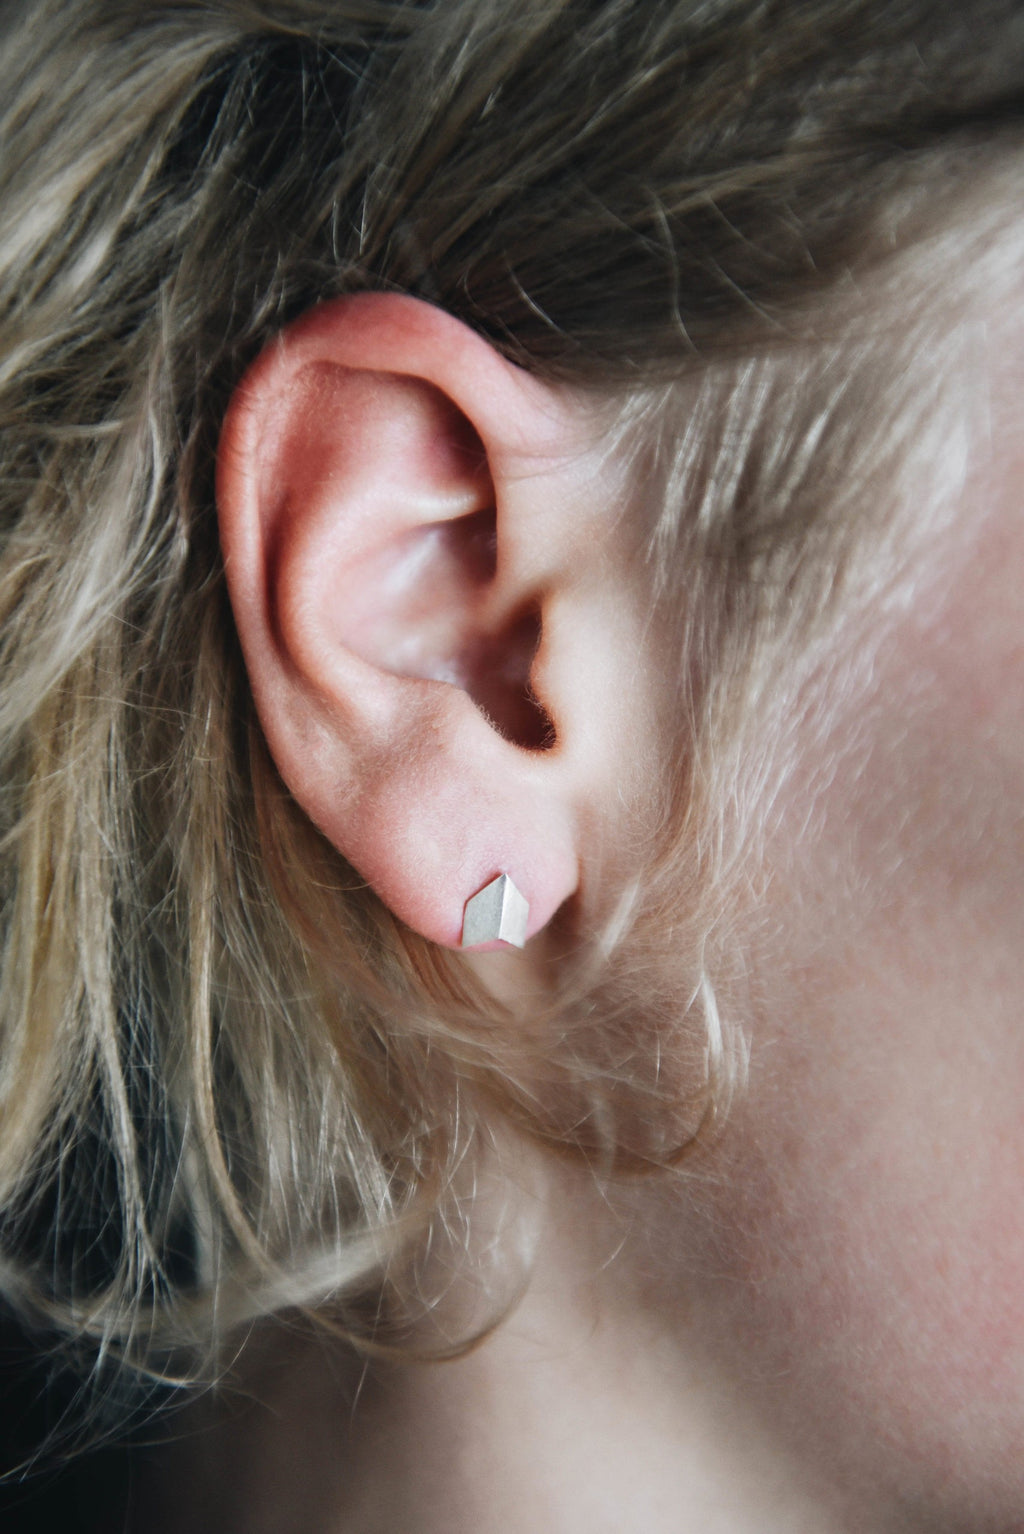 Fjellsmykke - Lus Silver Earrings by Linn Sigrid Bratland - Norwegian Jewelry